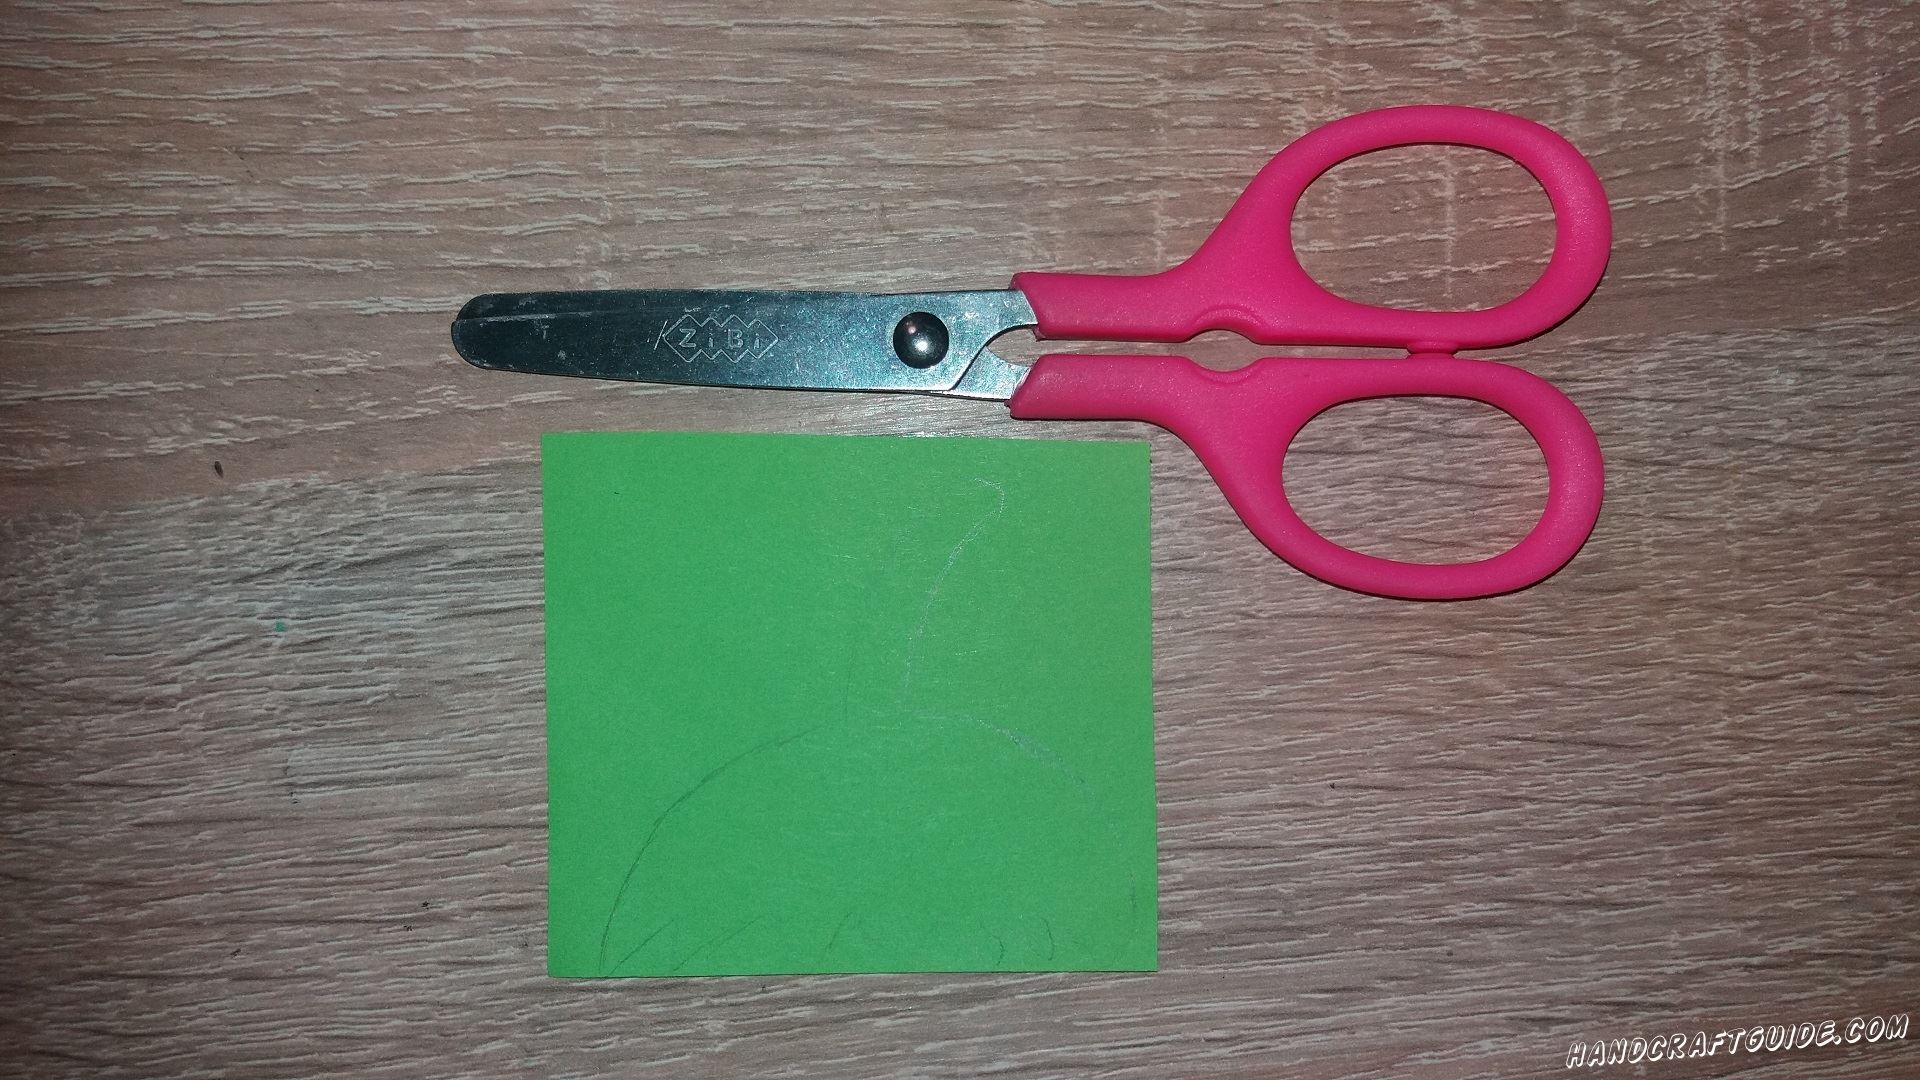 Сначала вырезаем верхнюю часть и хвостик клубнички, из бумаги зелёного цвета